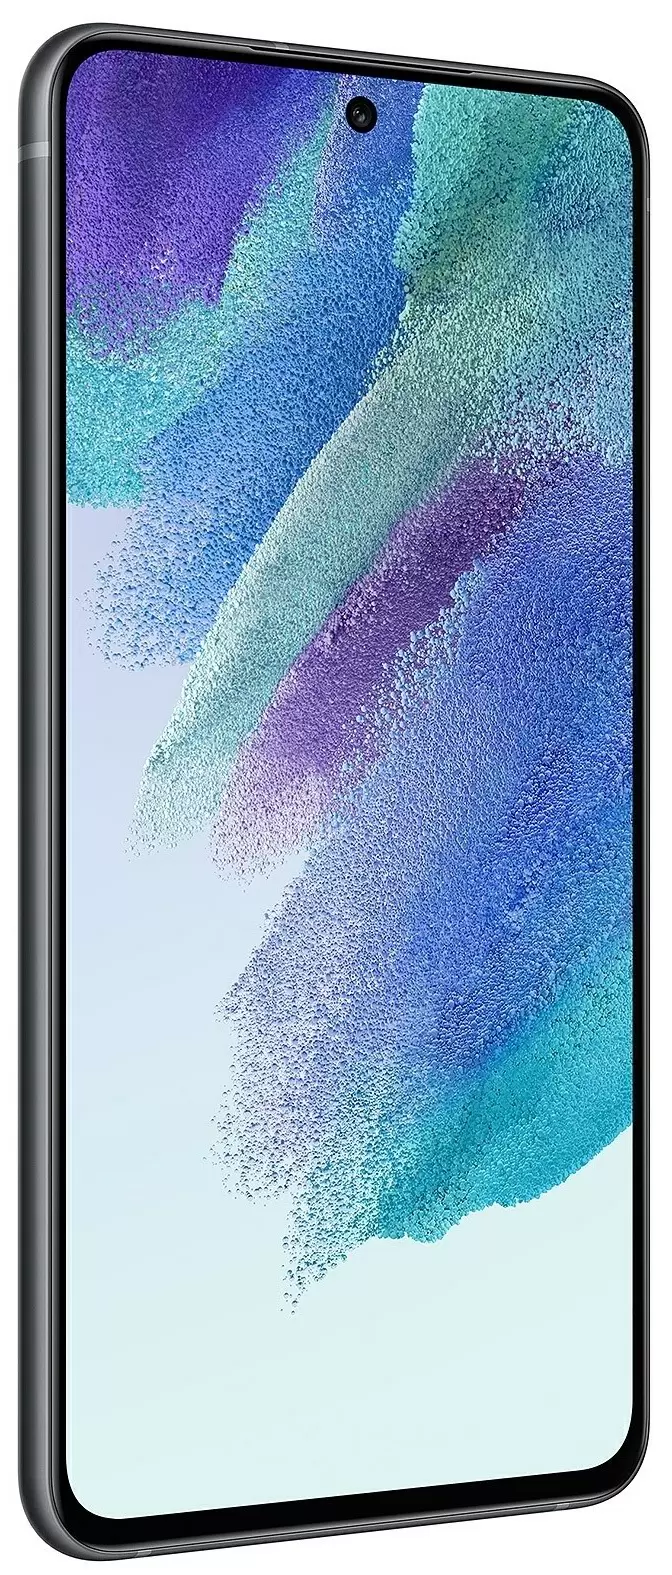 Smartphone Samsung SM-G990 Galaxy S21 FE 8/256GB, gri